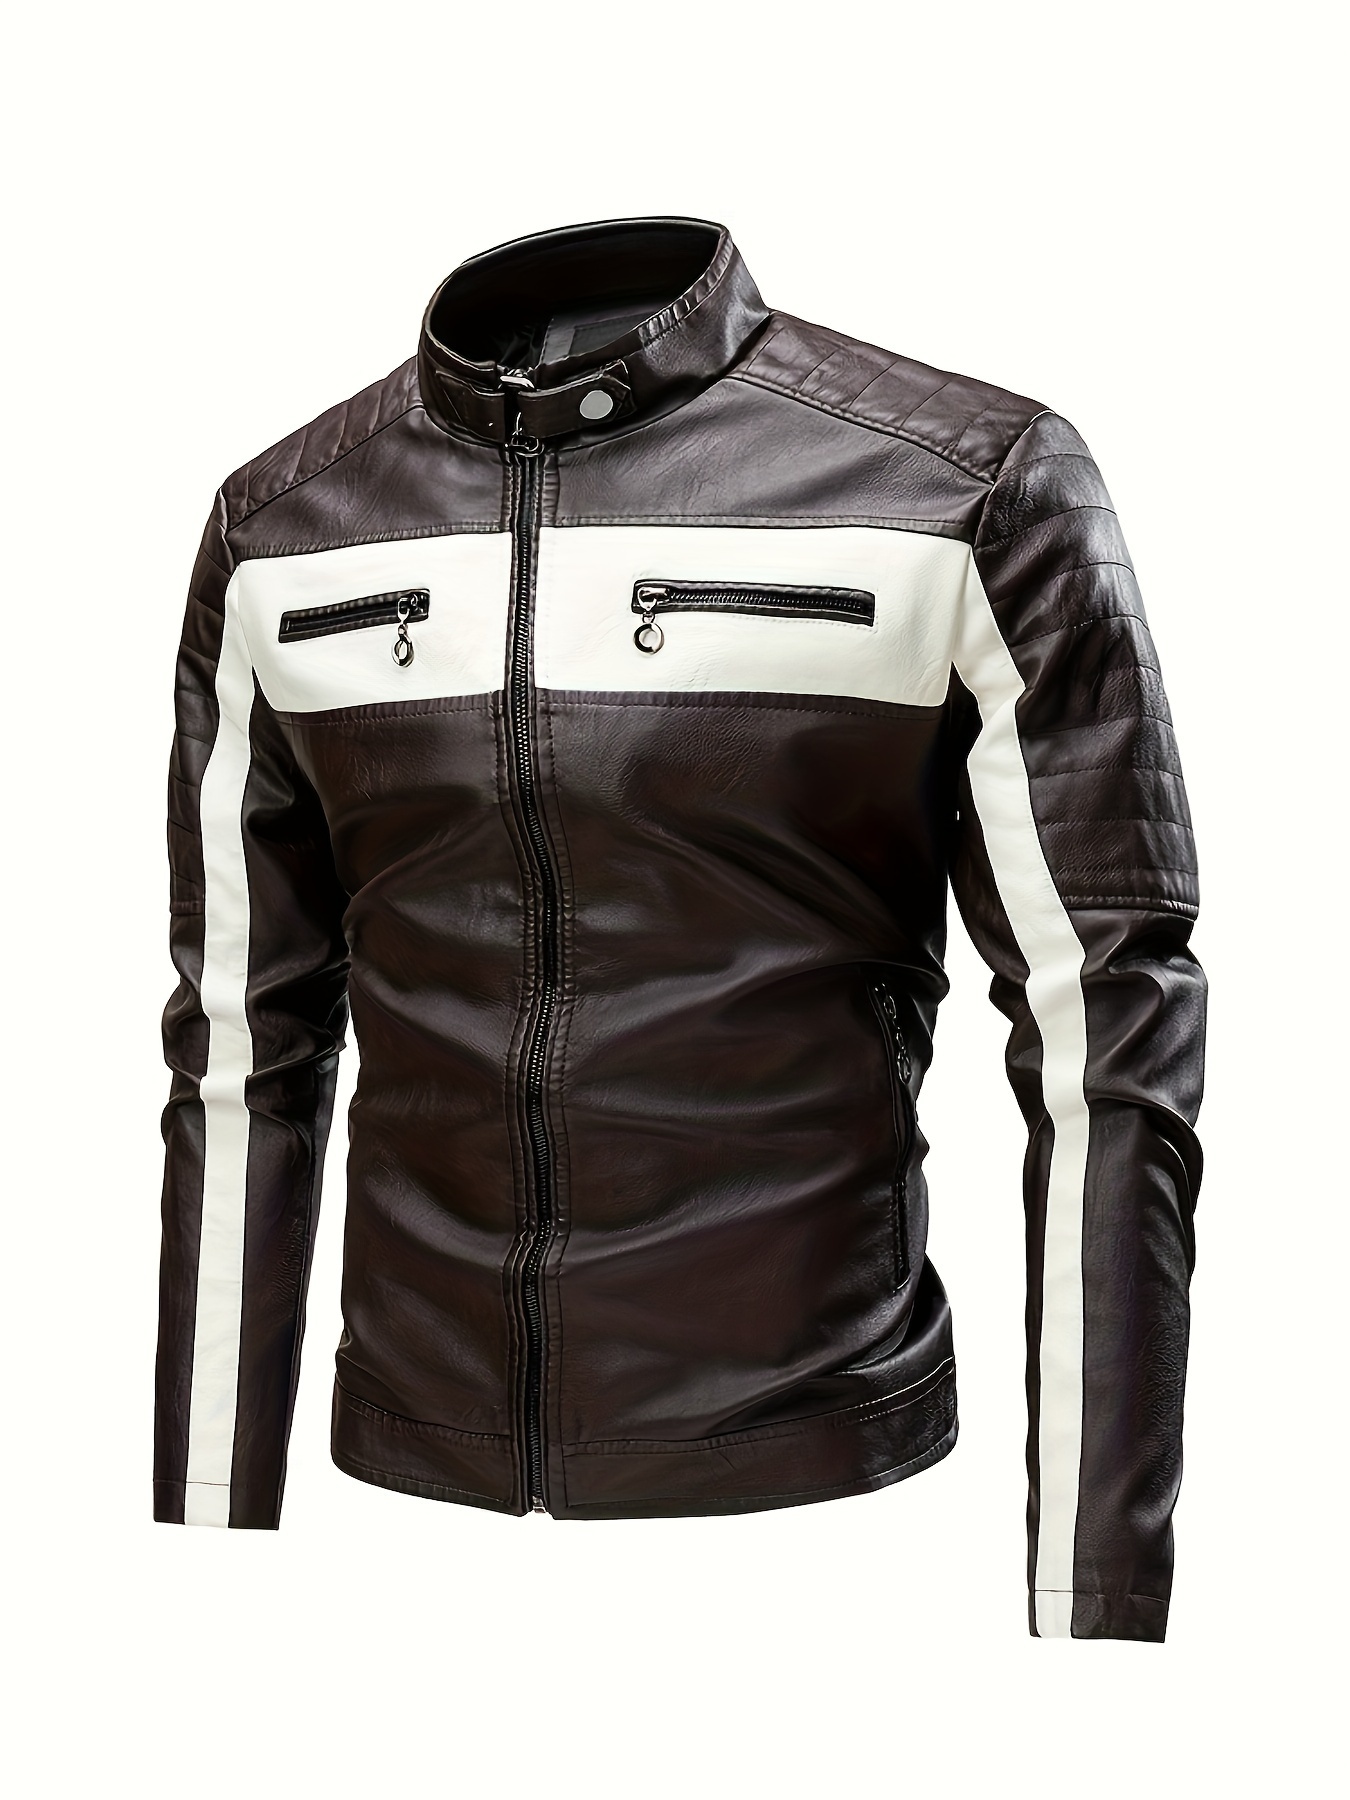 hombre con chaquetas de cuero - Búsqueda de Google  Leather jacket men,  Real leather jacket, Leather jacket black